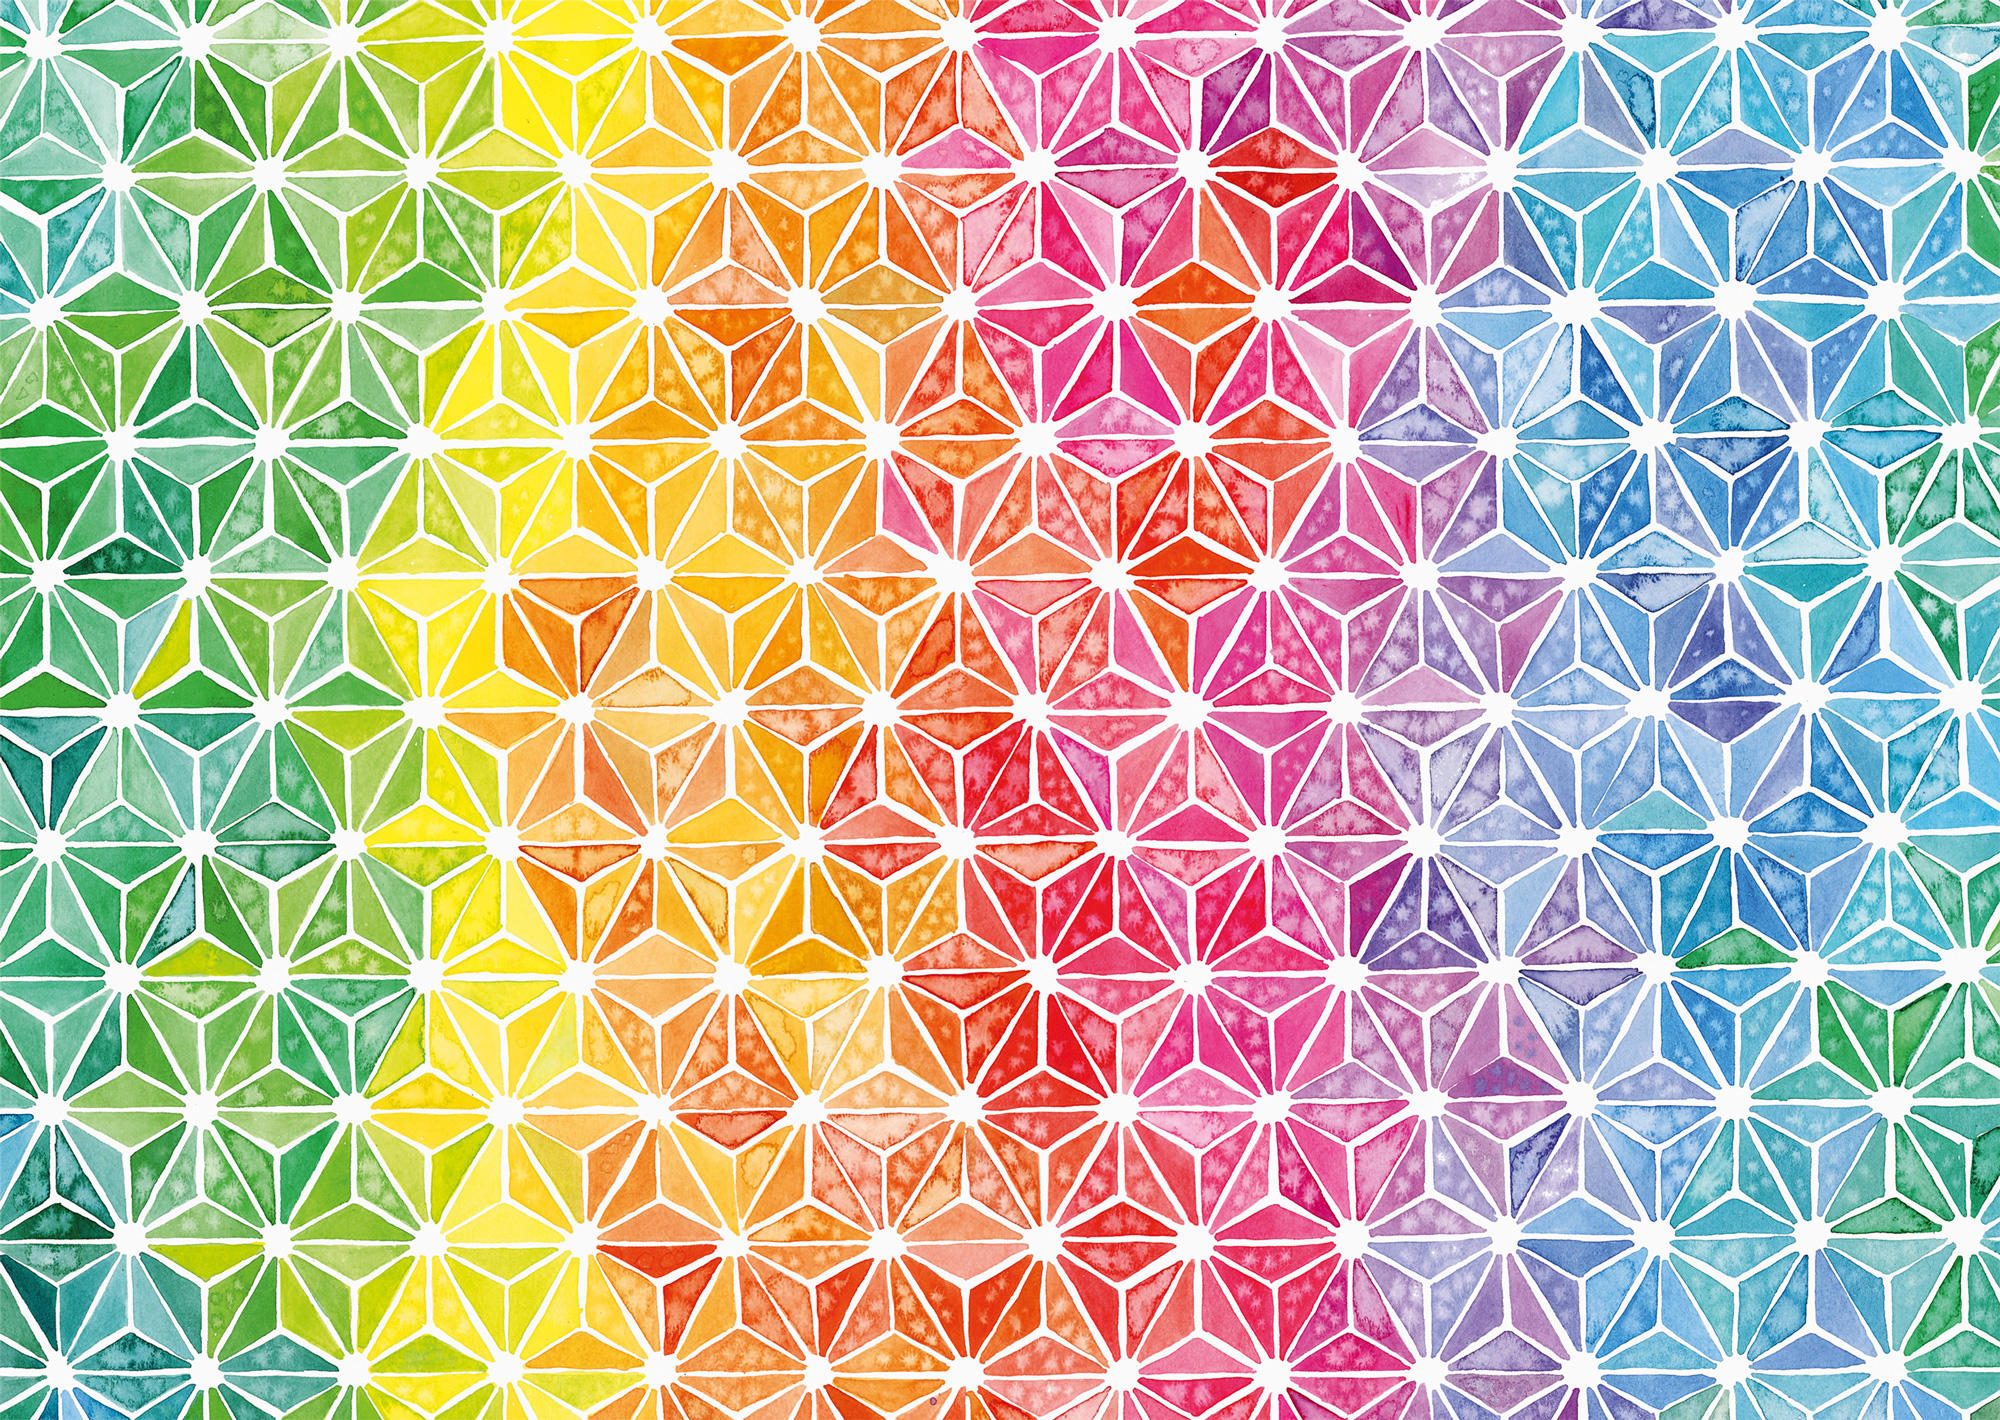 Puzzle Josie Lewis: triângulos coloridos